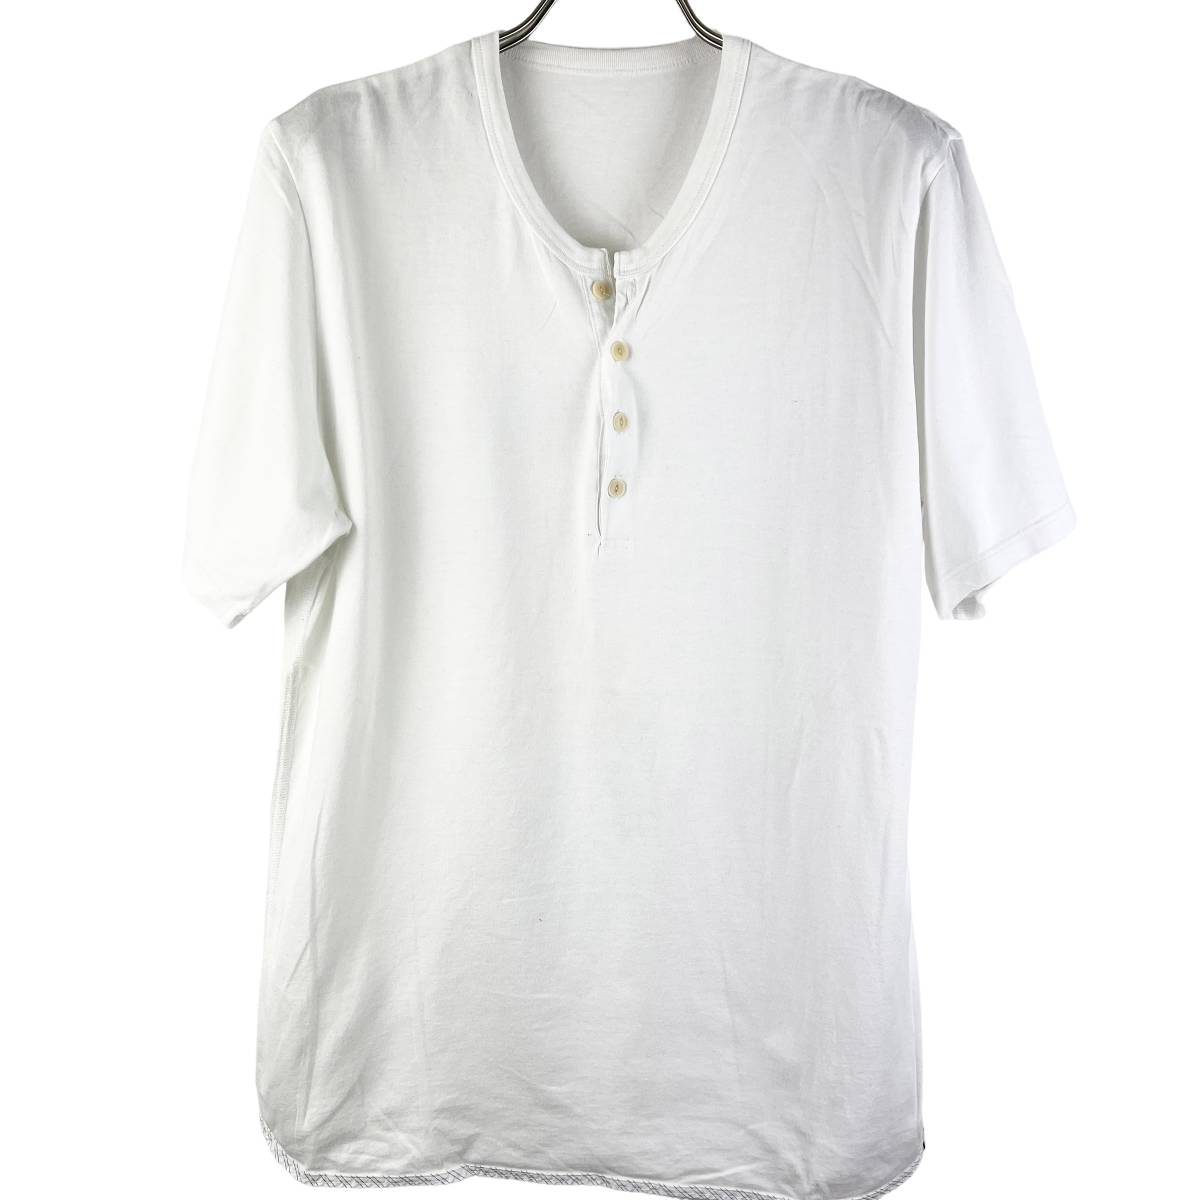 VISVIM(ビズビム) Collarless Bottom Cotton T Shirt (white) 3_画像1